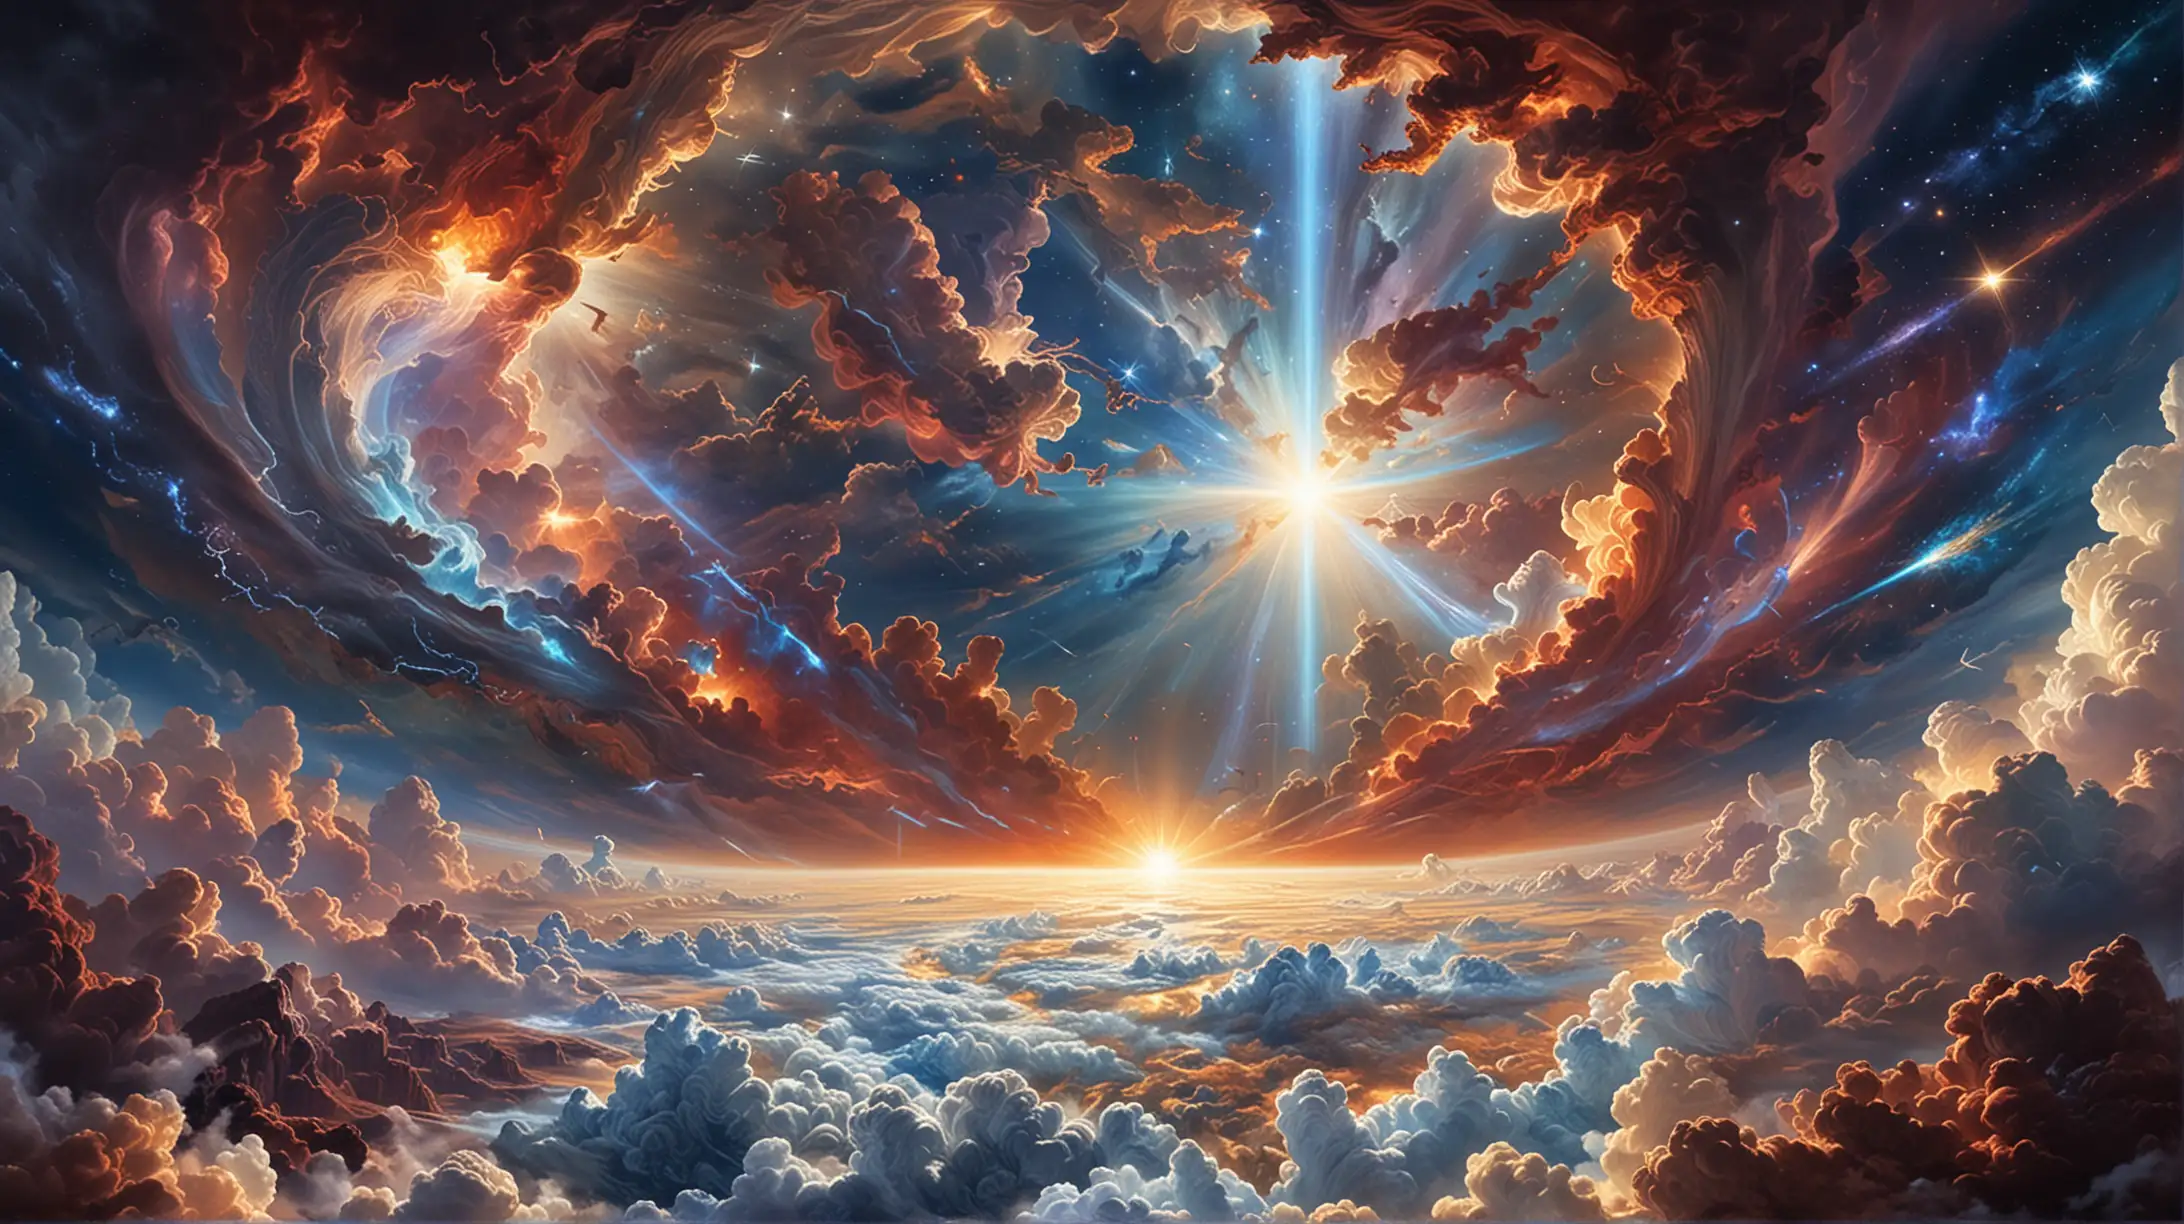 En el principio, Dios creó los cielos y la tierra